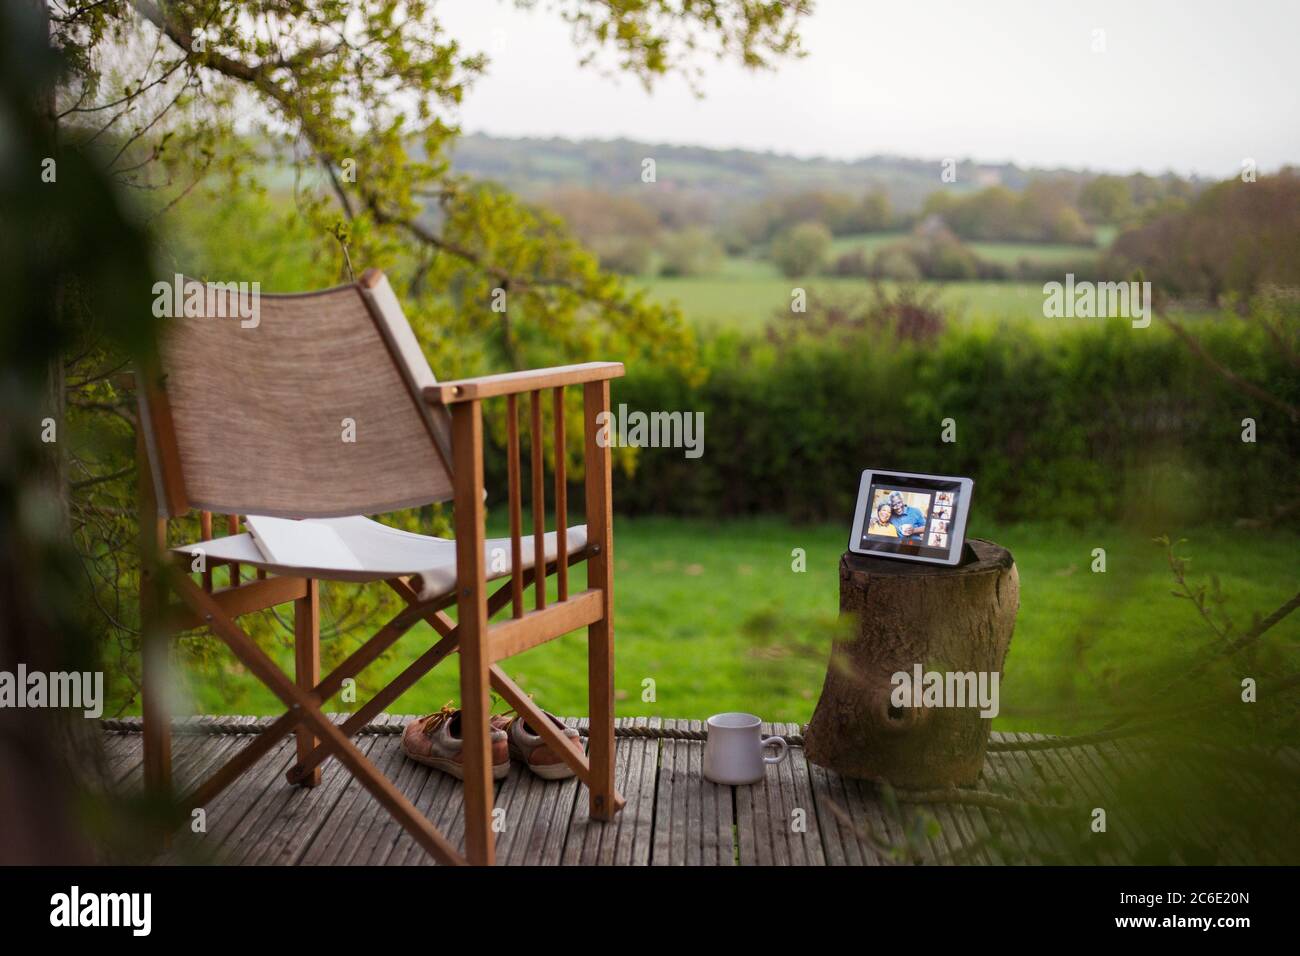 Chat video degli amici sullo schermo del tablet digitale su un patio idilliaco Foto Stock